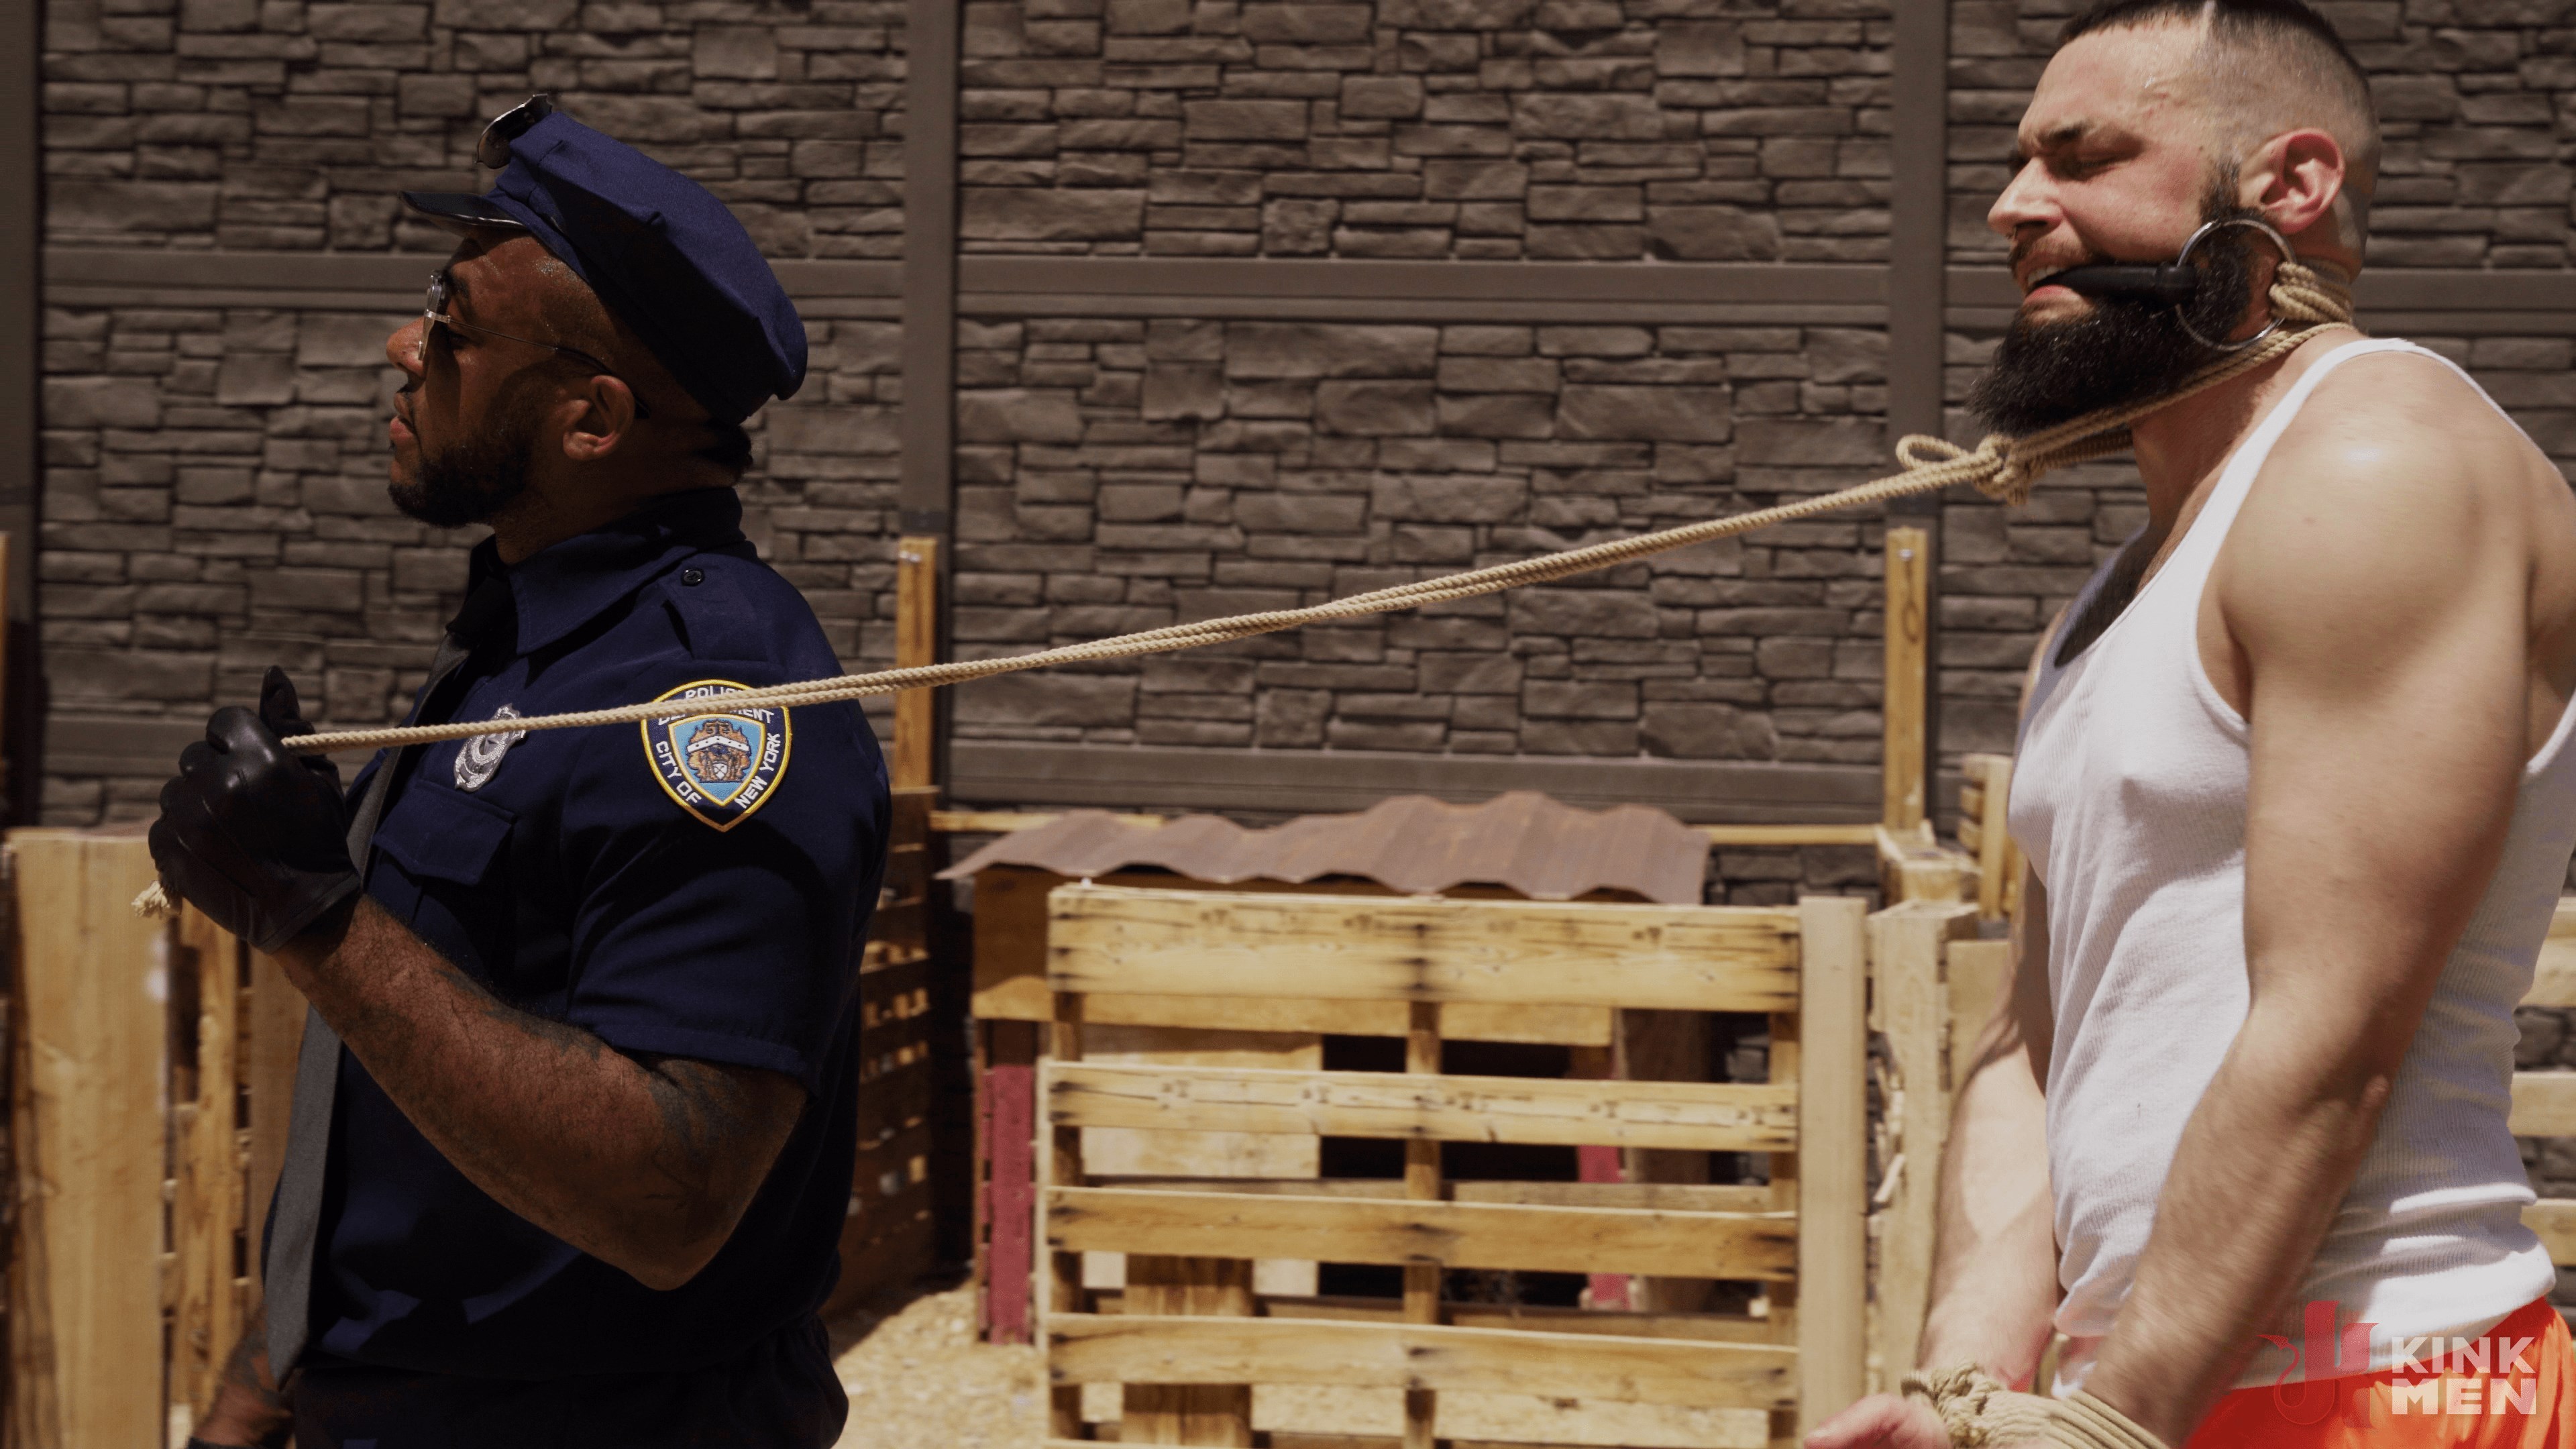 Kink Men 'Good Behavior: Inmate Joseph Ox Submits to Officer Micah Martinez' starring Micah Martinez (Photo 4)